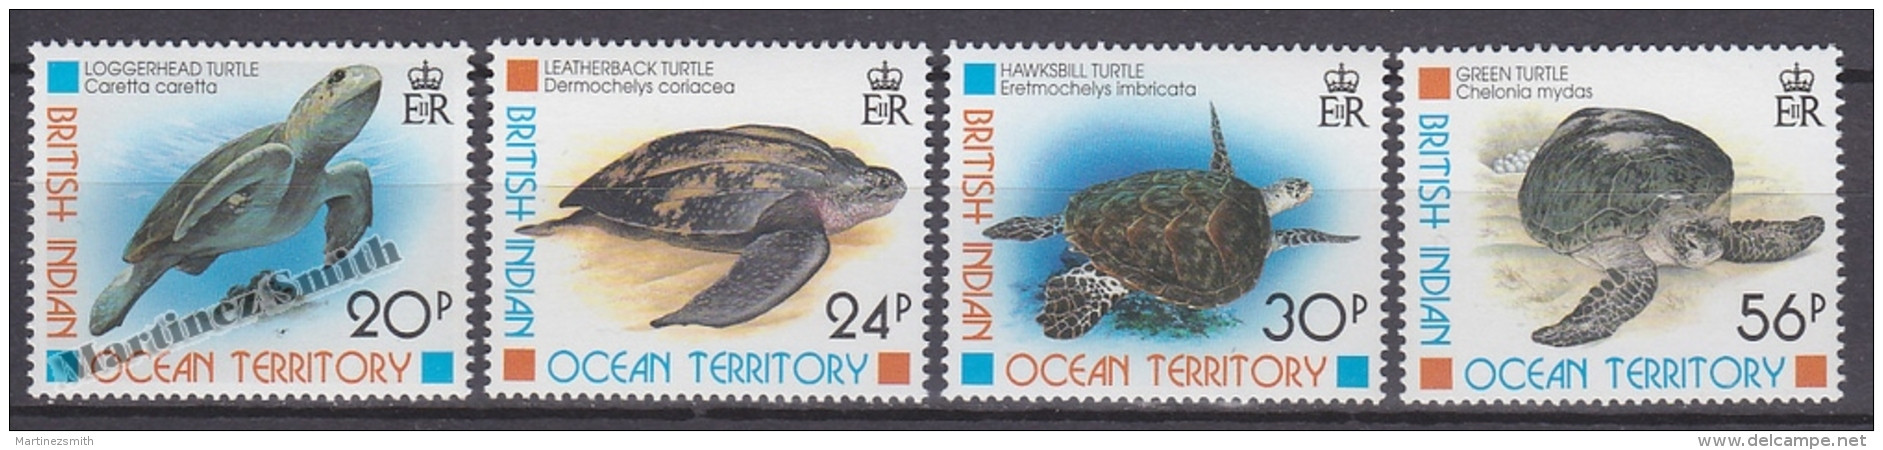 British Indian Ocean 1996 Yvert 181- 184, Fauna, Sea Turtles - MNH - British Indian Ocean Territory (BIOT)